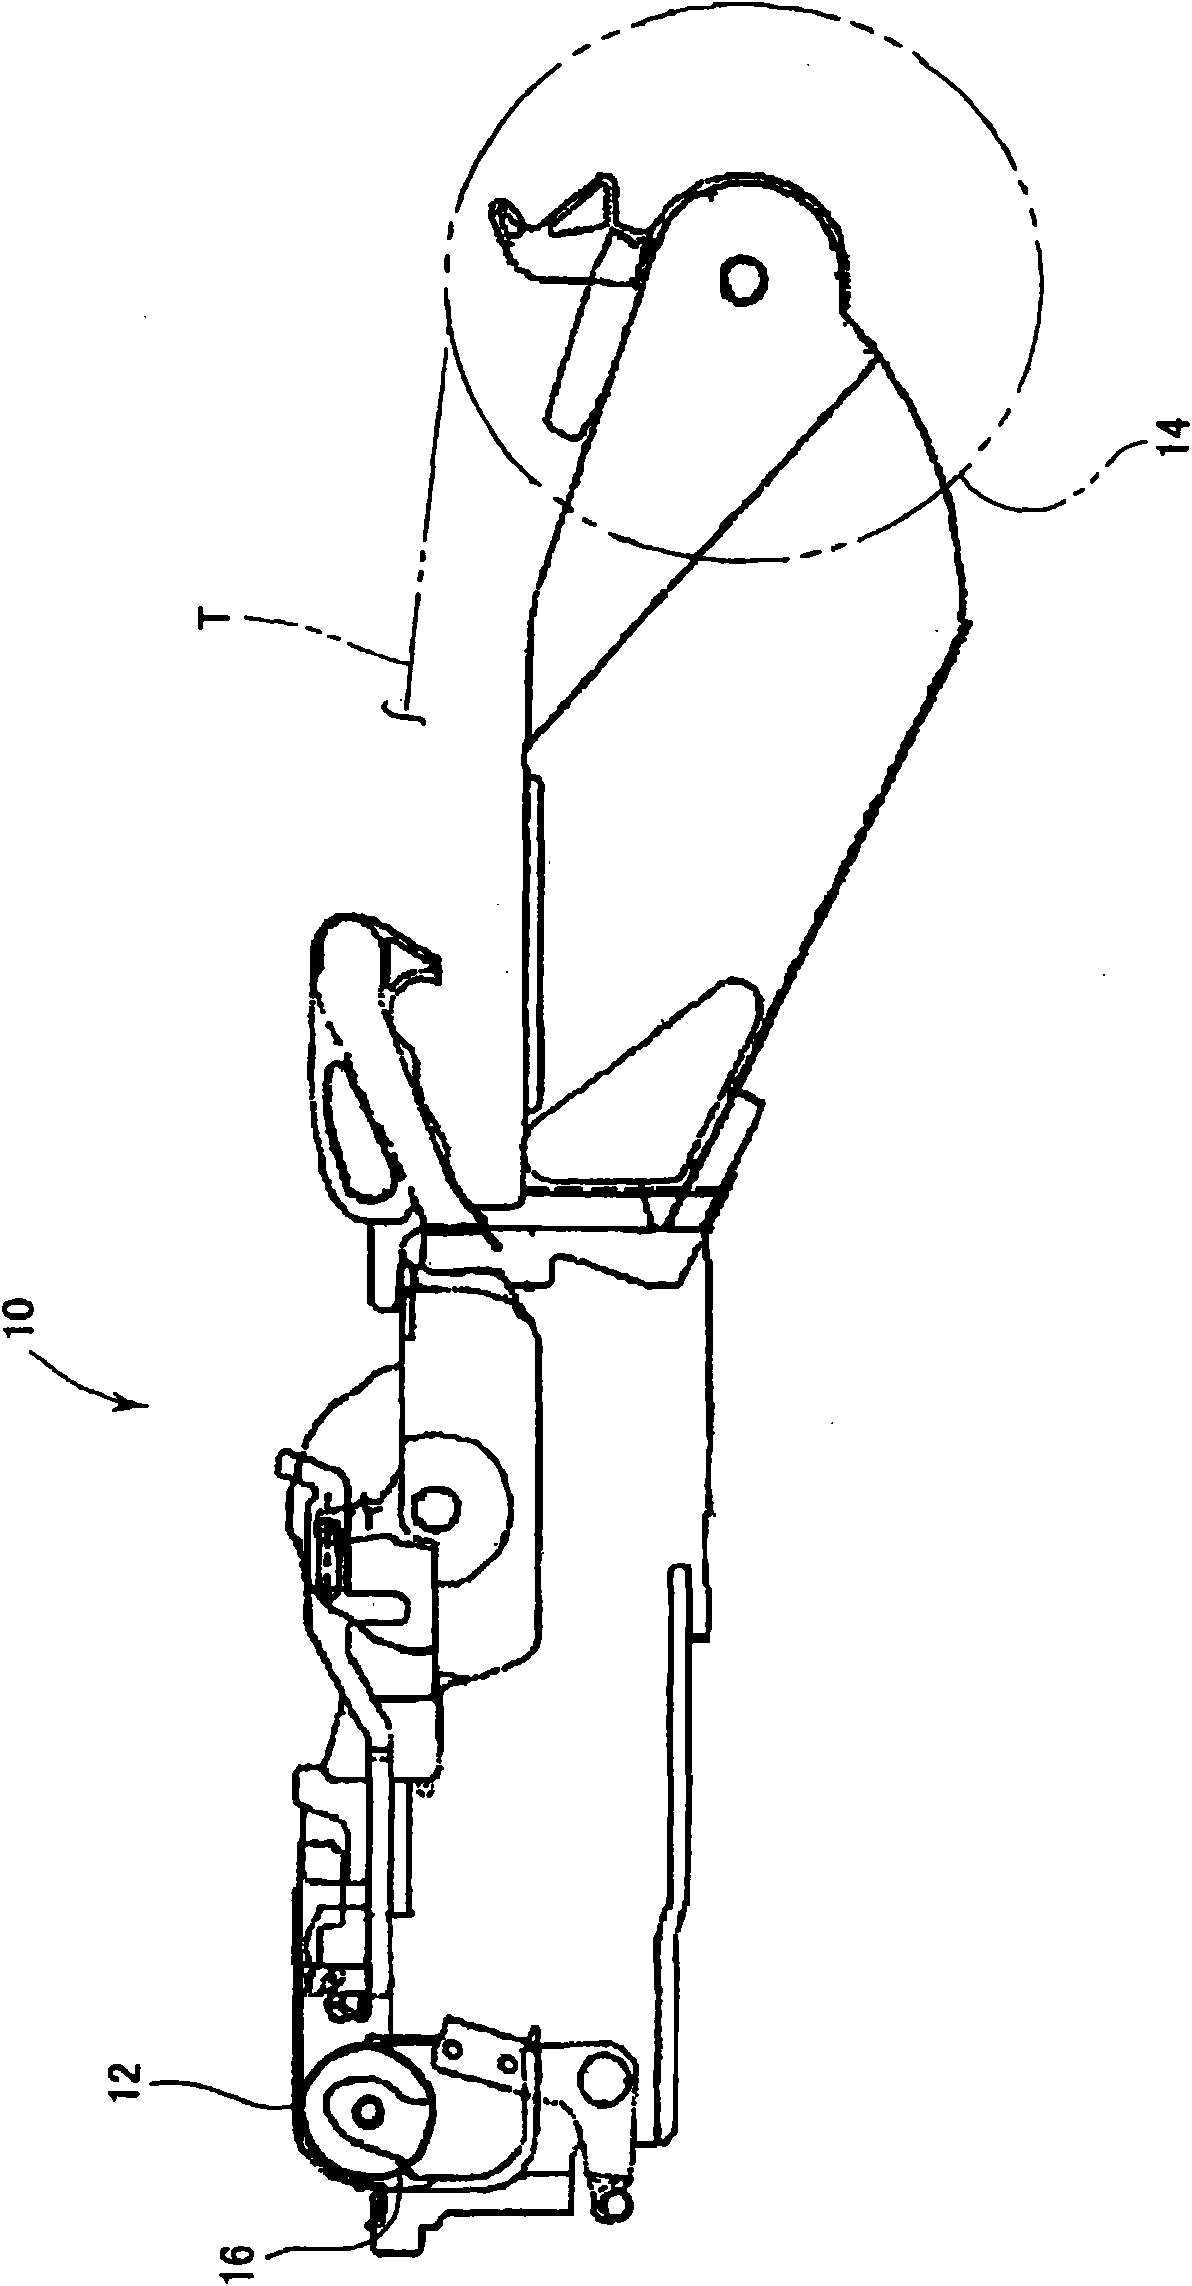 Belt-type feeder